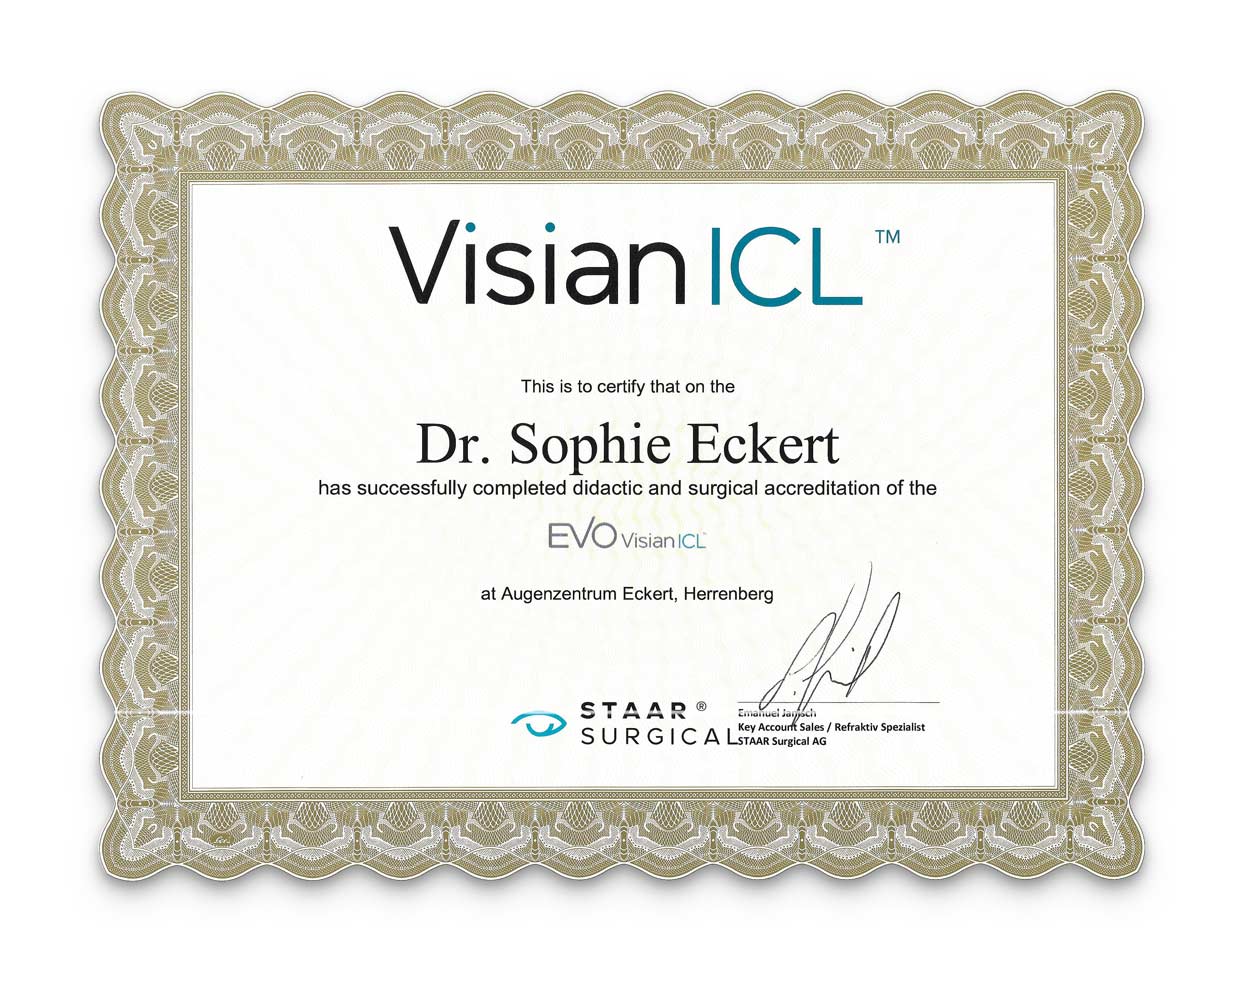 Visian ICL Zertifikat von Dr. Sophie Eckert